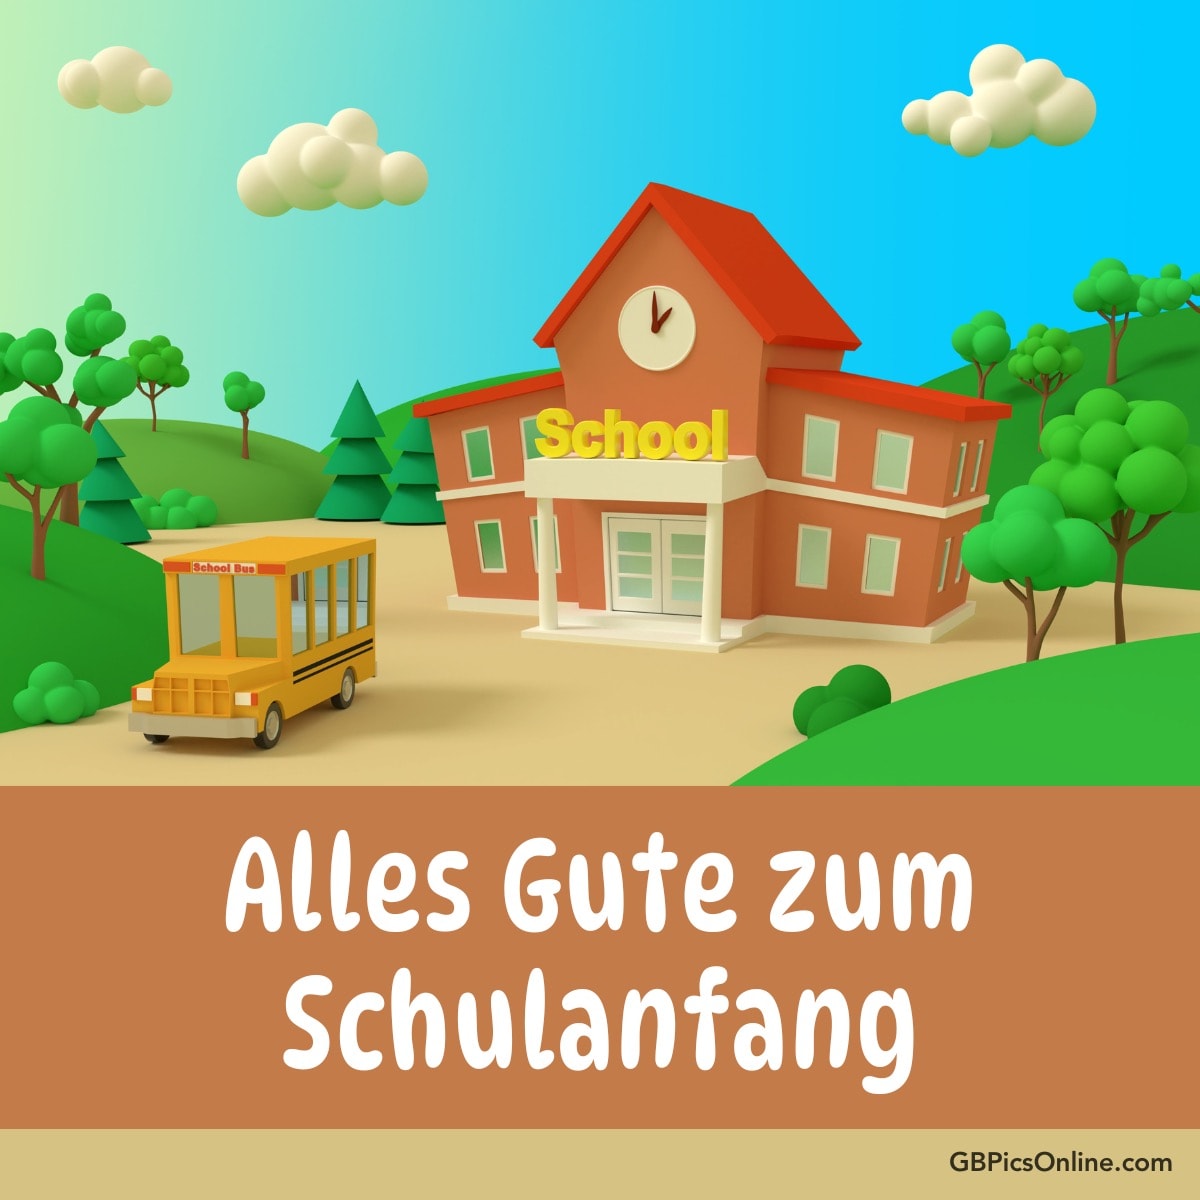 Ein Schulgebäude und ein gelber Schulbus in einer farbenfrohen Cartoon-Landschaft